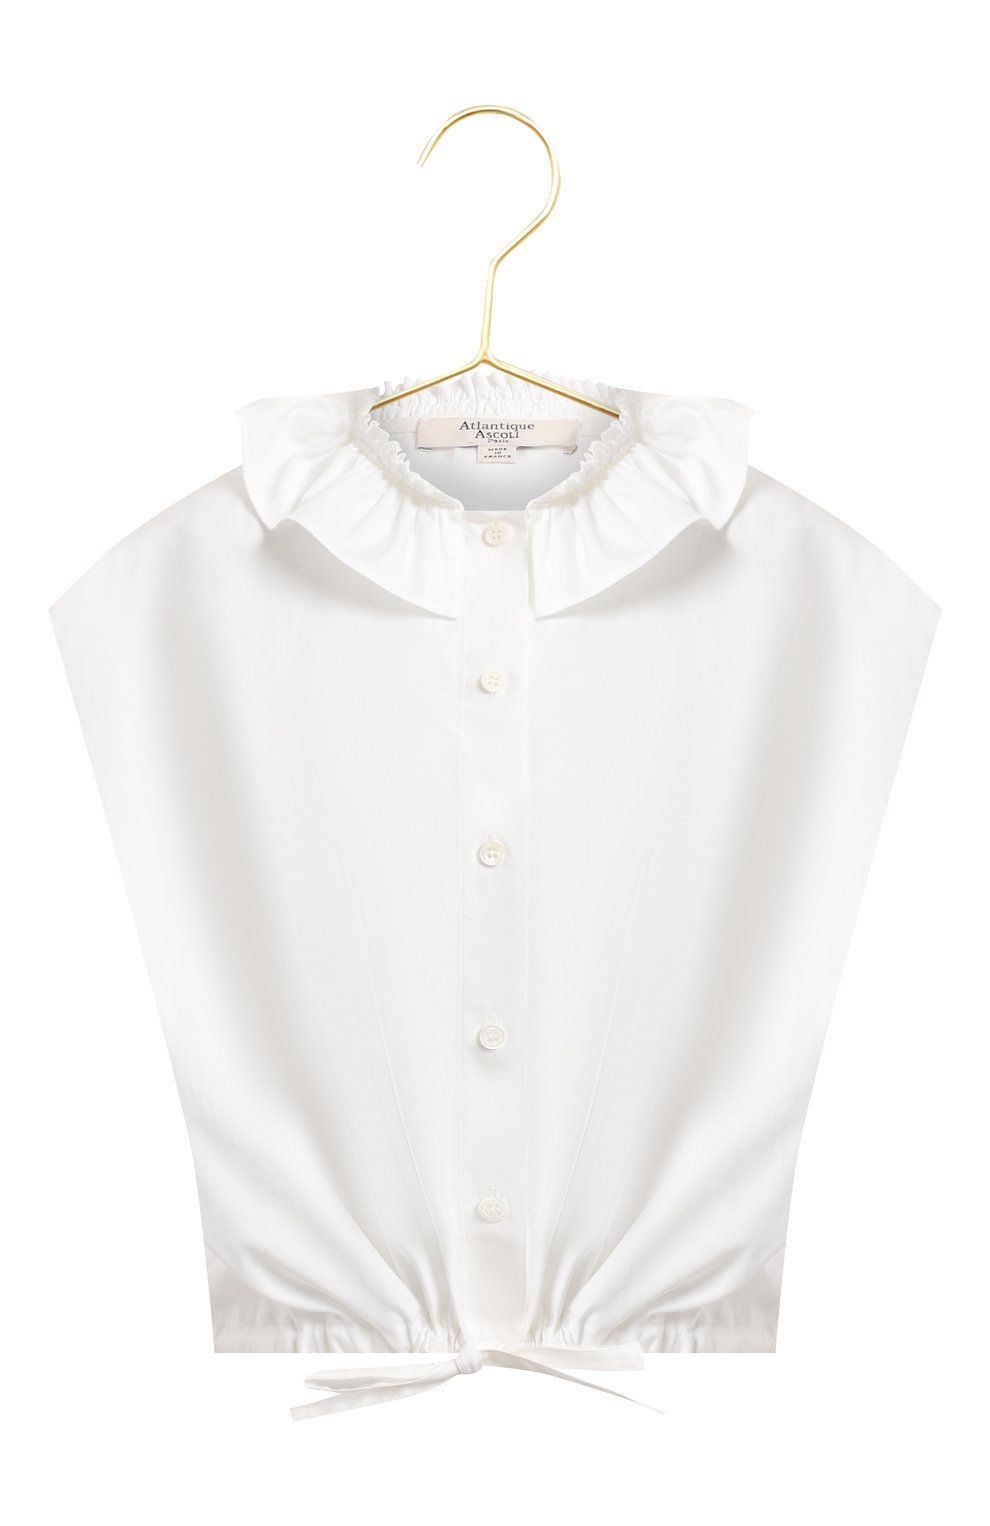 Хлопковая блузка | Atlantique Ascoli | Белый - 1